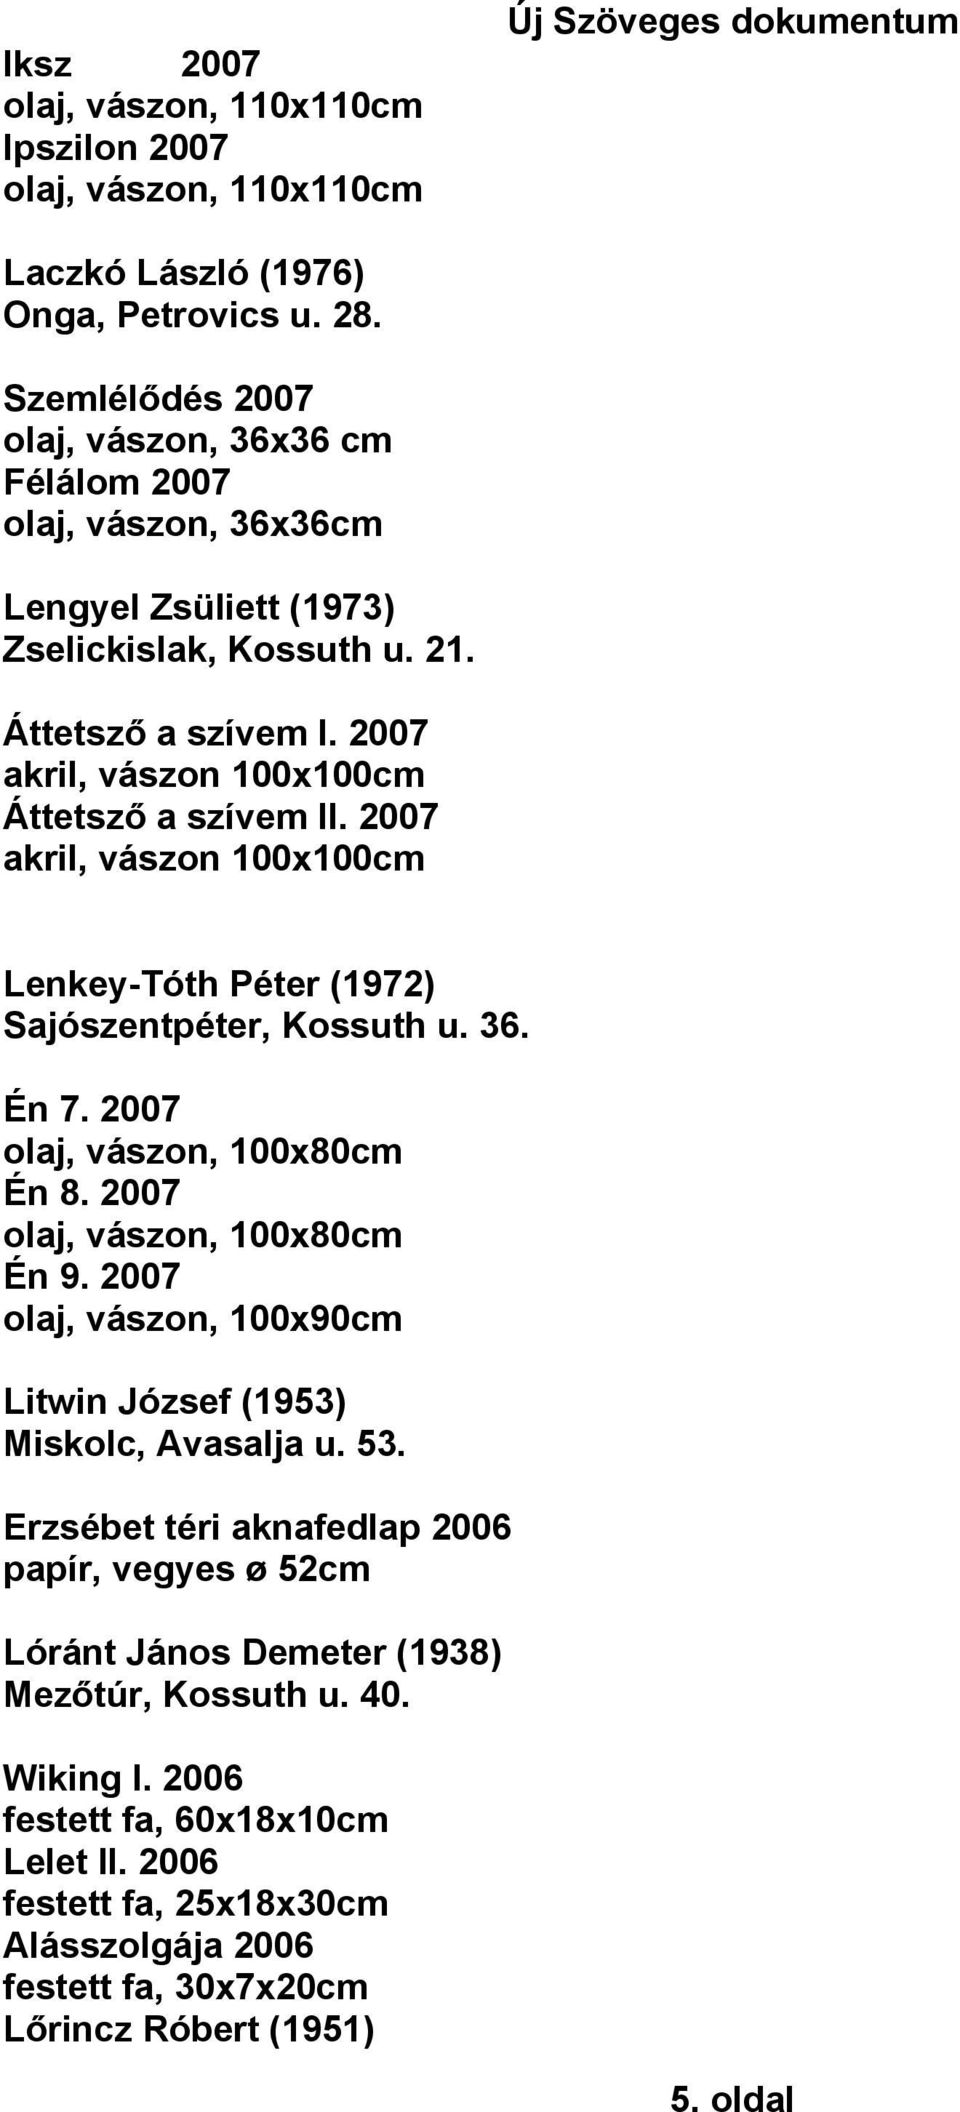 2007 akril, vászon 100x100cm Lenkey-Tóth Péter (1972) Sajószentpéter, Kossuth u. 36. Én 7. 2007 olaj, vászon, 100x80cm Én 8. 2007 olaj, vászon, 100x80cm Én 9.